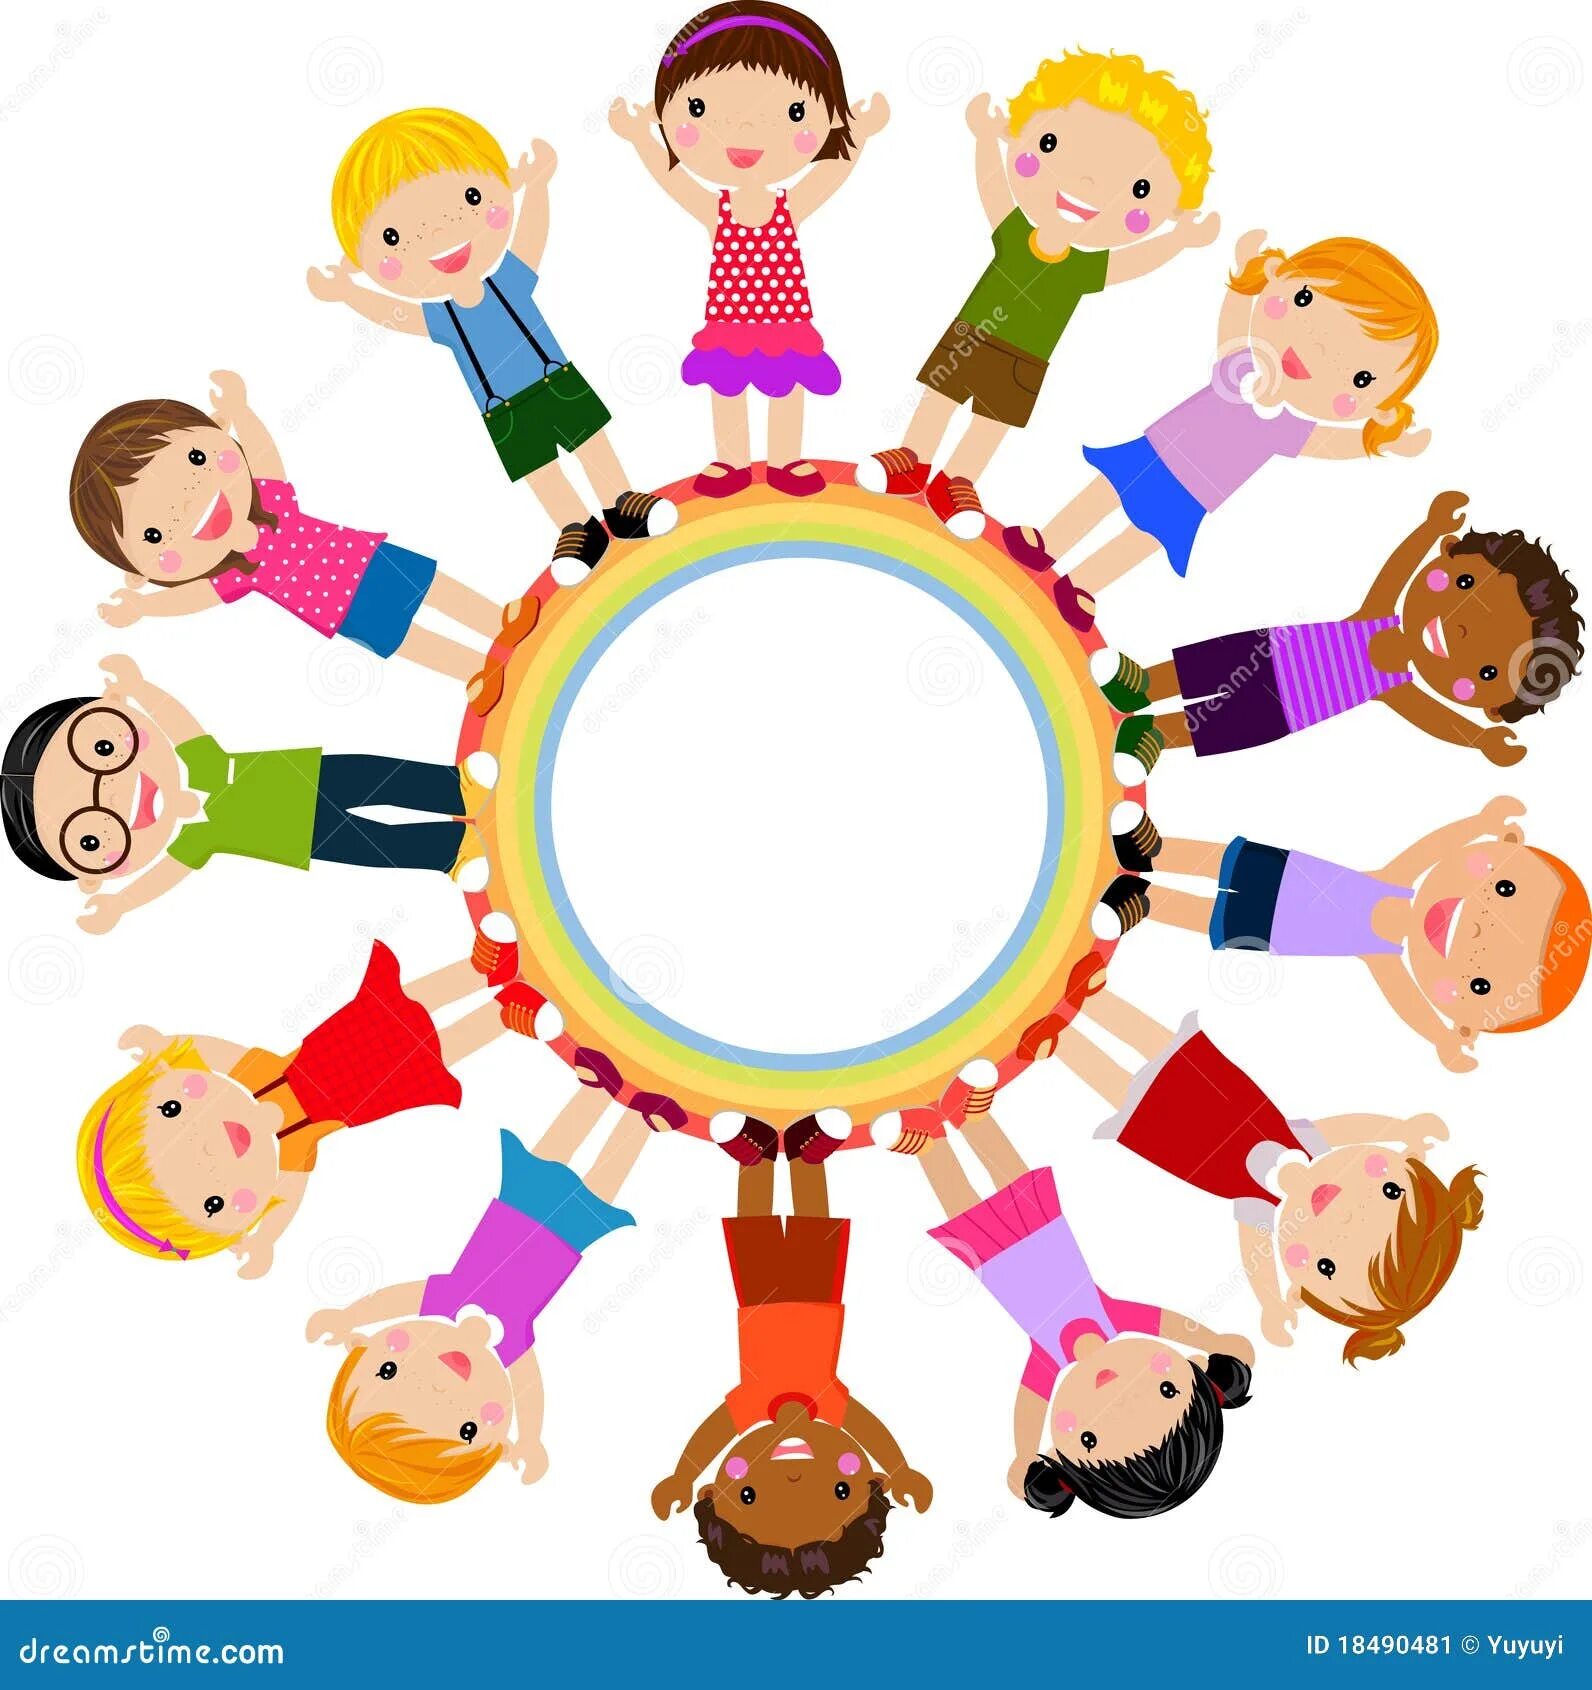 Дети полукругом. Дети в кругу. Дети стоящие в кругу. Дети в кругу в группе. Иллюстрация дети стоят в кругу.